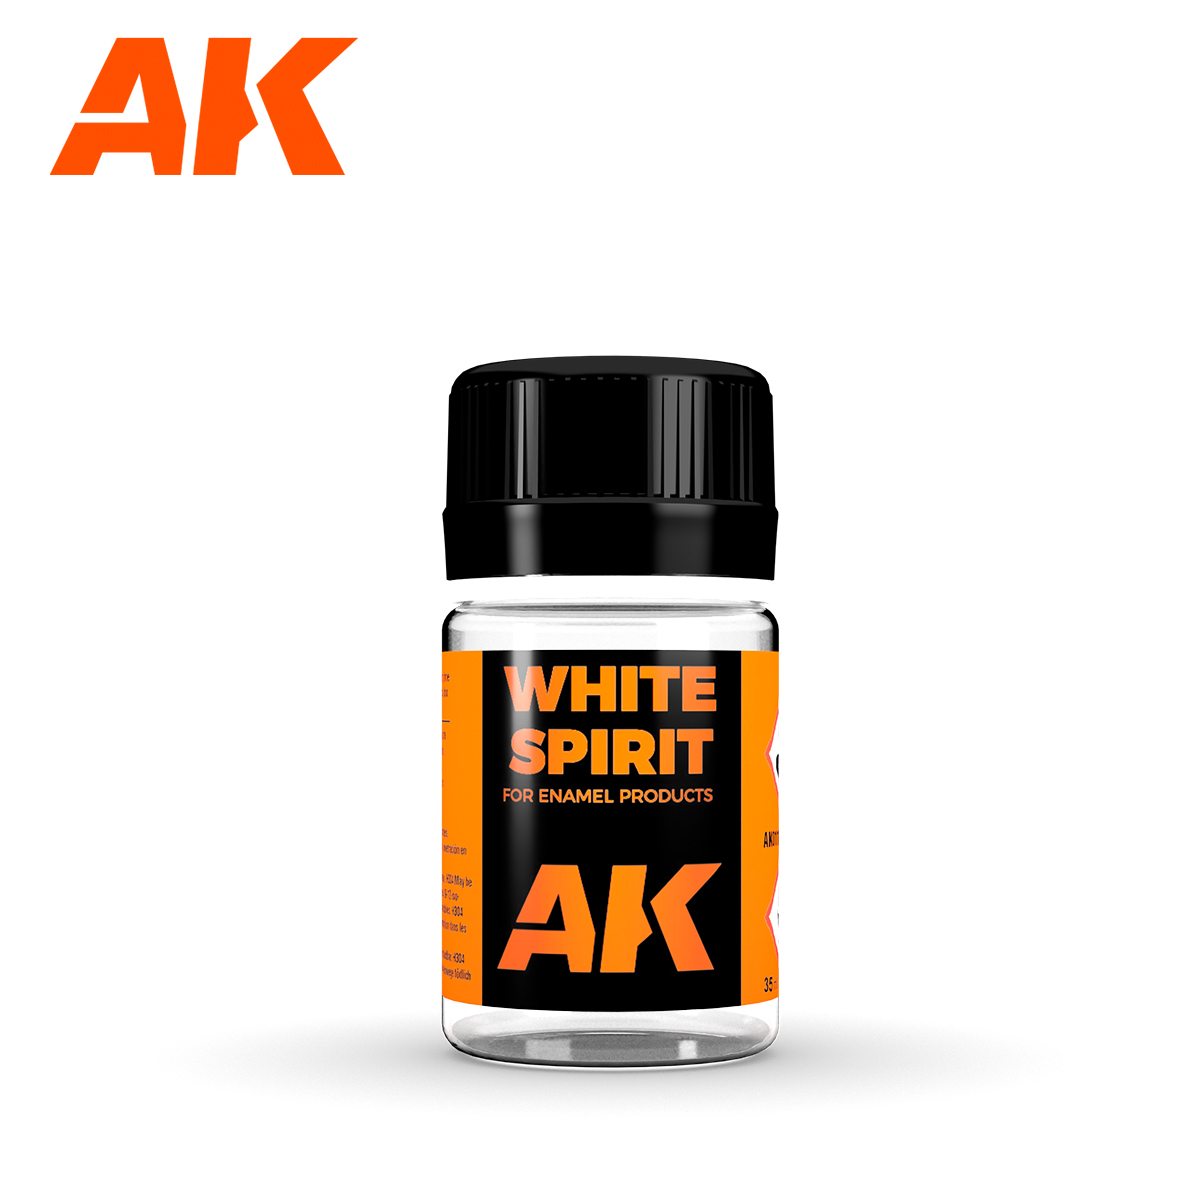 Buy White Spirit 35 ml online for 3,75€